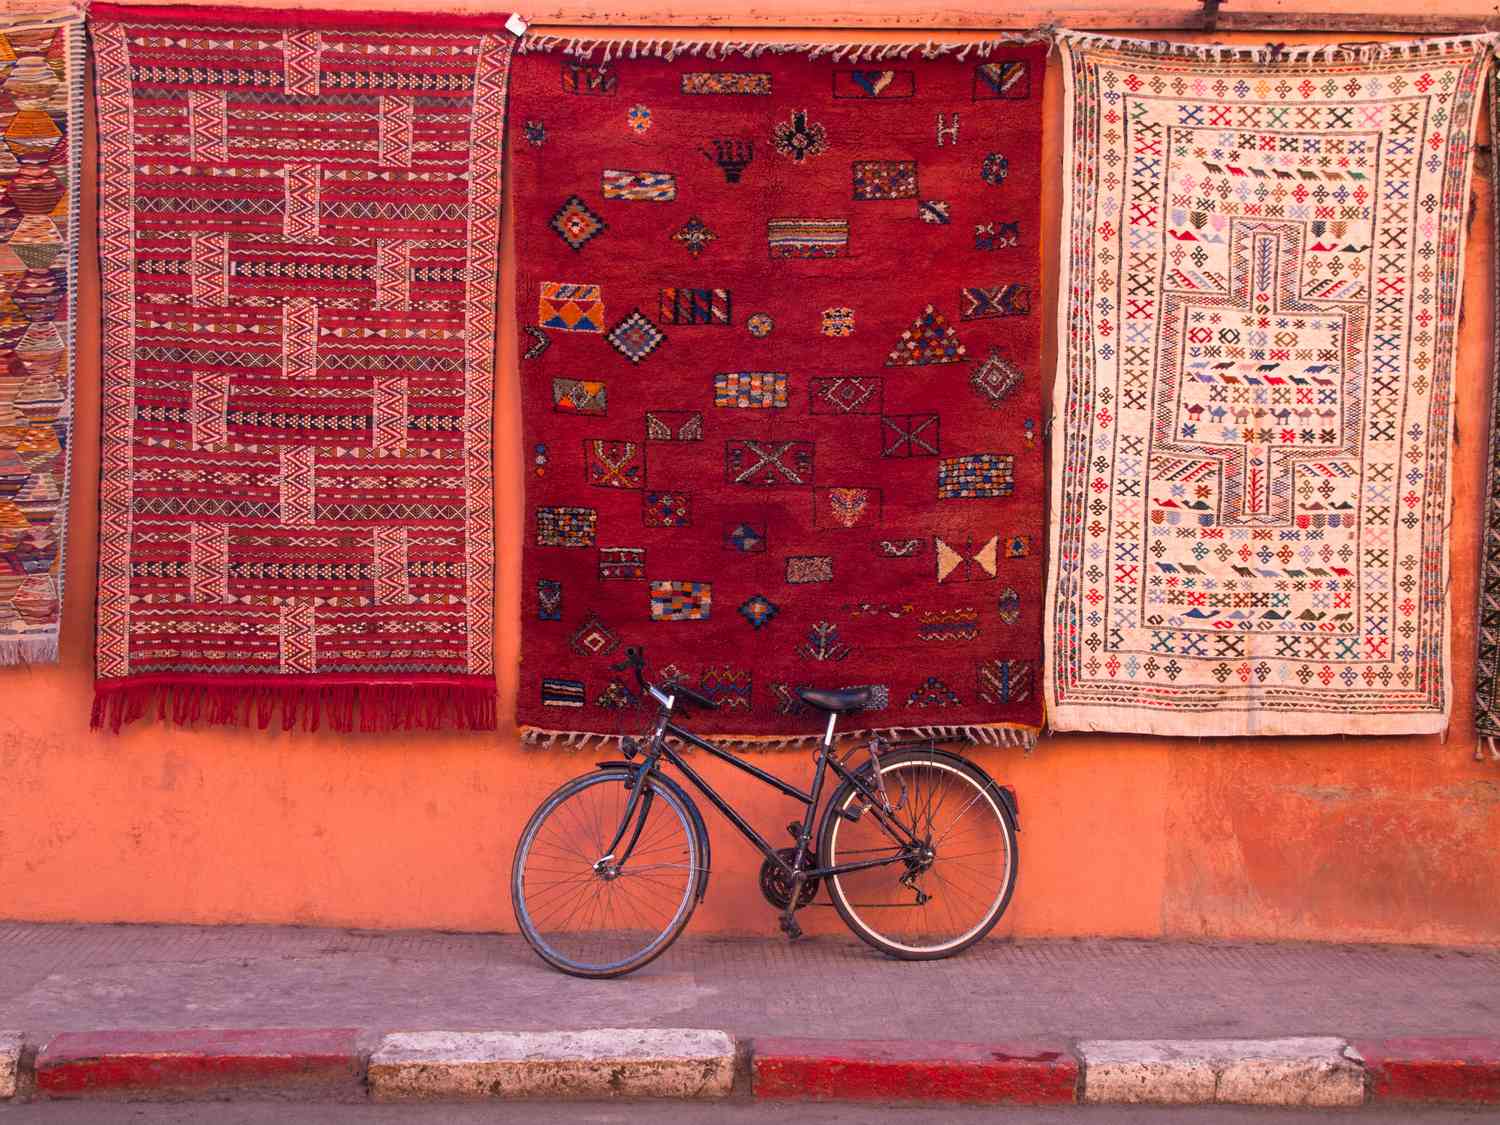 Bicicleta aparcada en la pared bajo alfombras colgantes con motivos tradicionales.